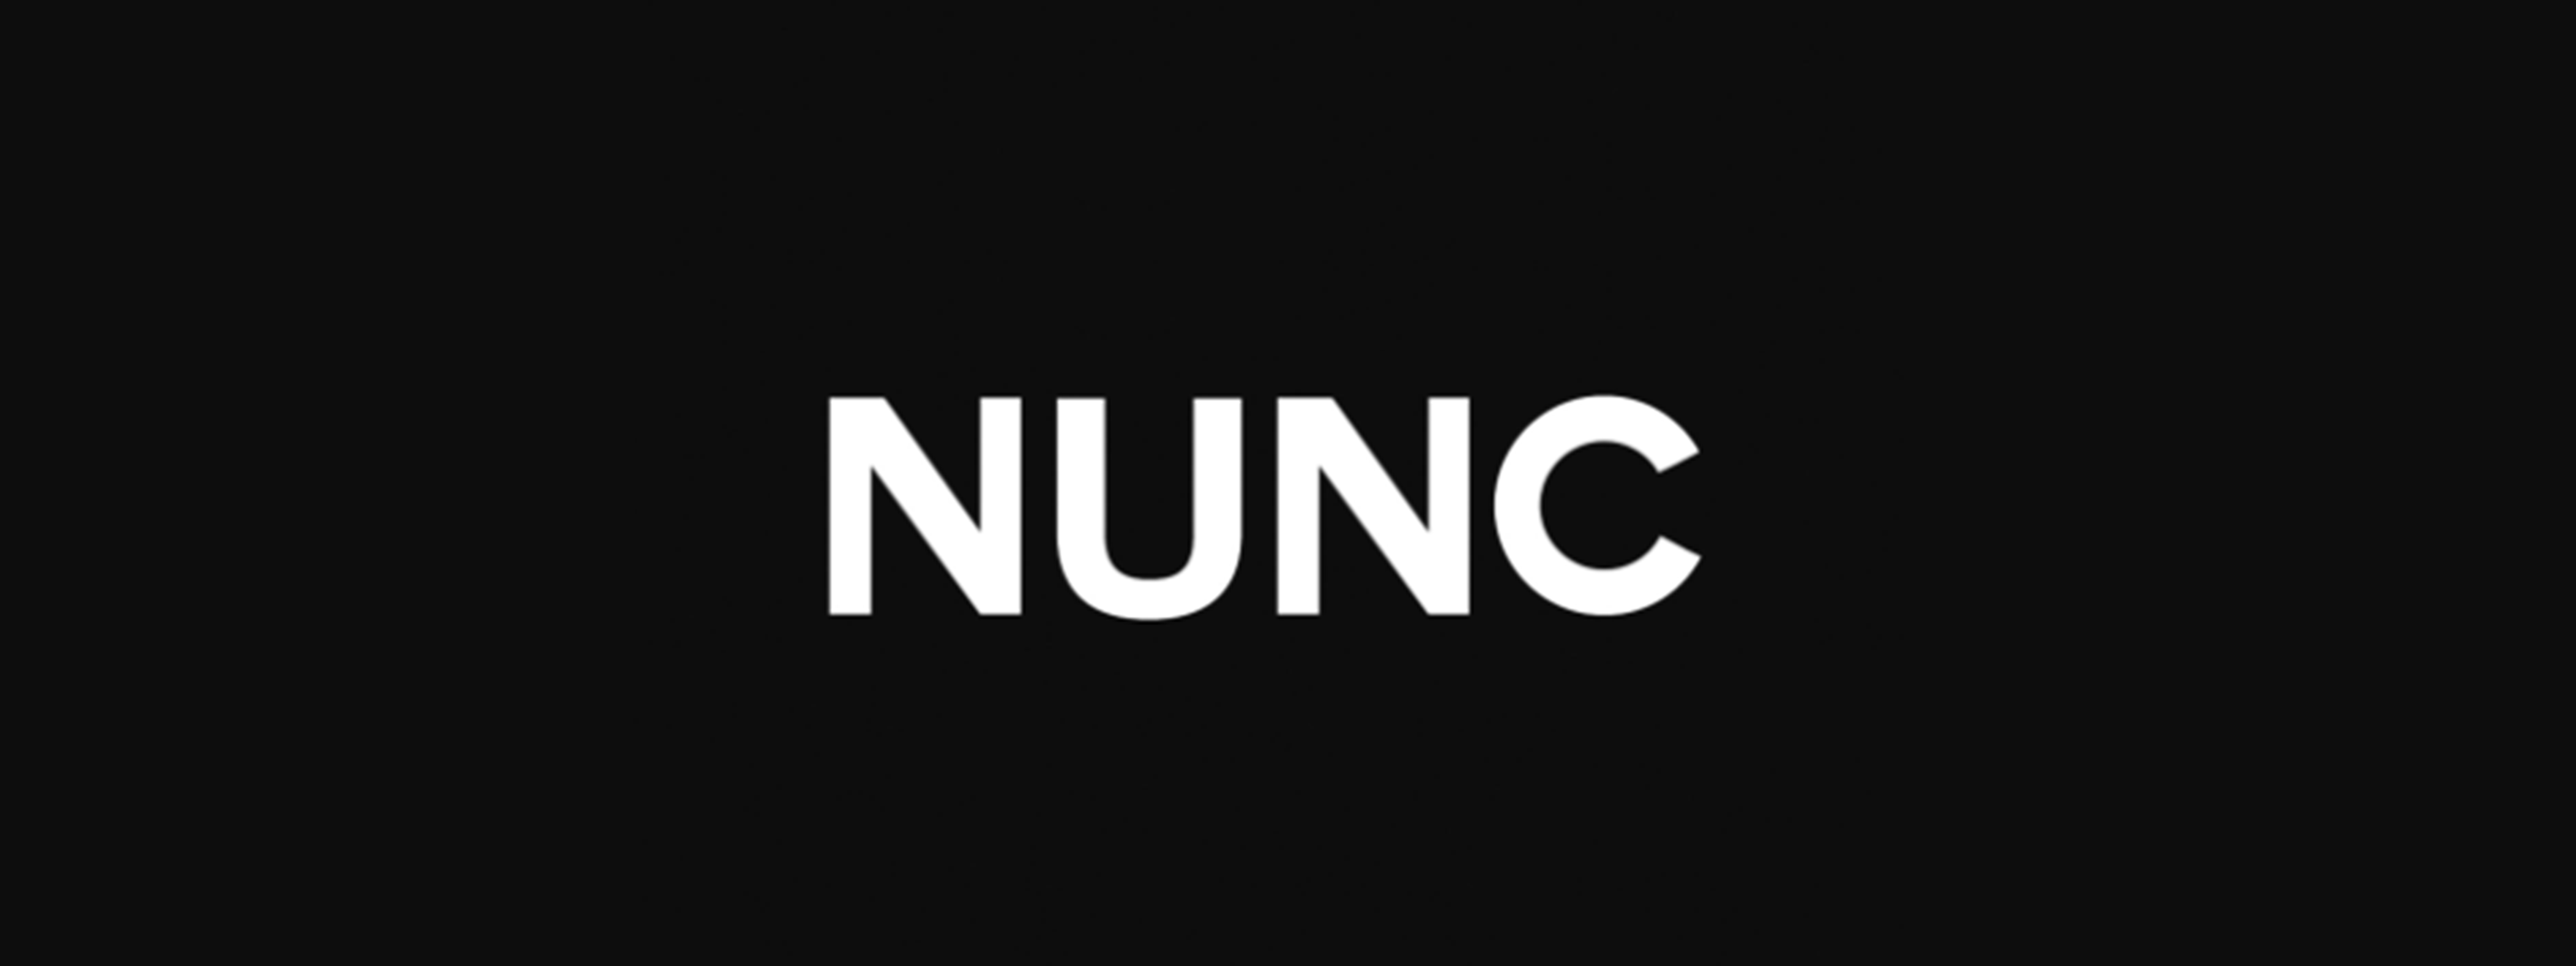 눈크인터내셔널(NUNC)